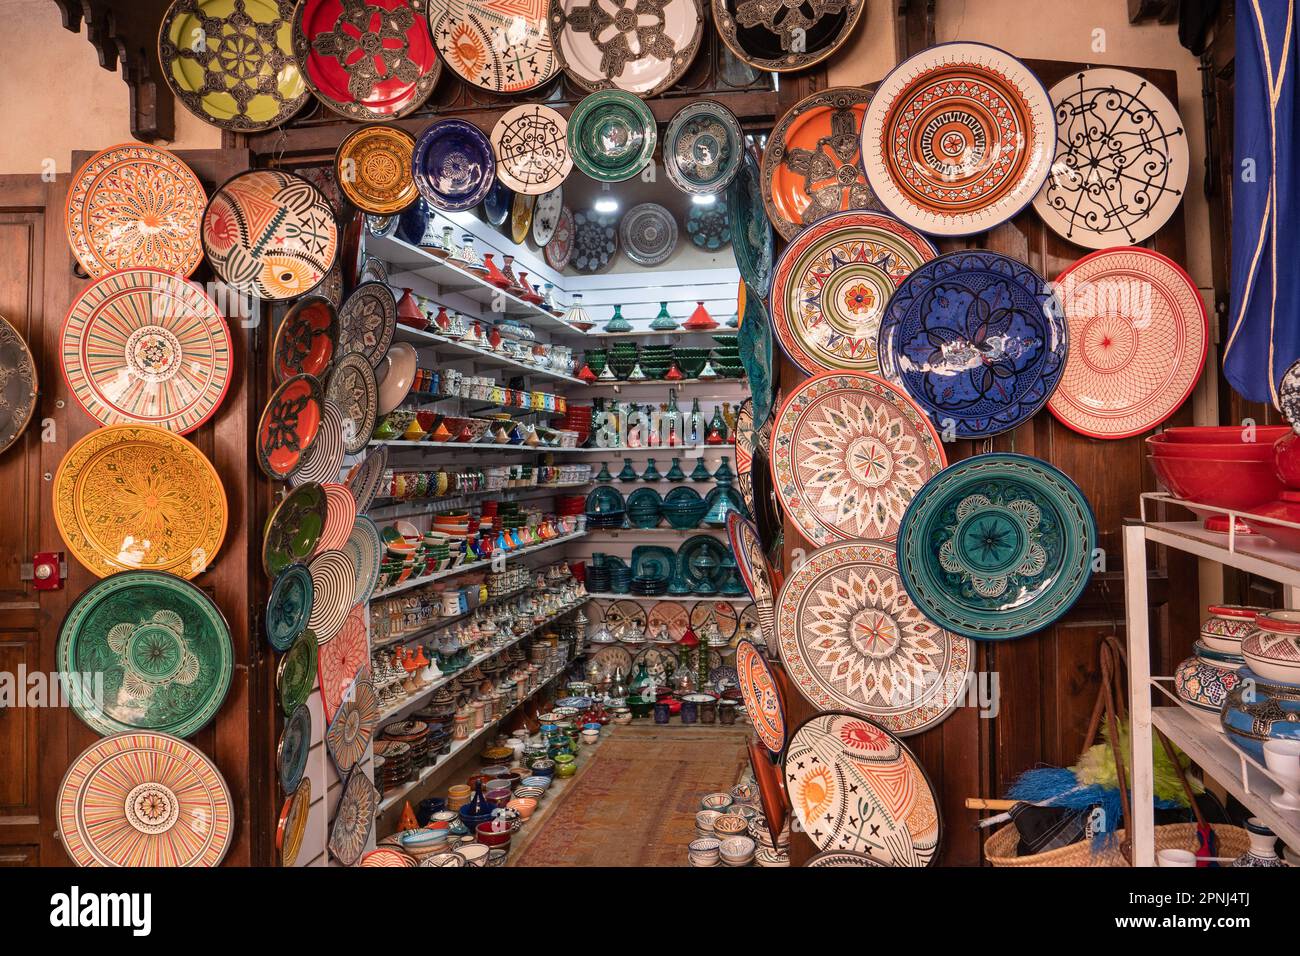 Schön dekorierter Souvenirladen mit traditioneller marokkanischer Keramik, boutique de souvenirs avec poterie marocaine traditionnelle Banque D'Images